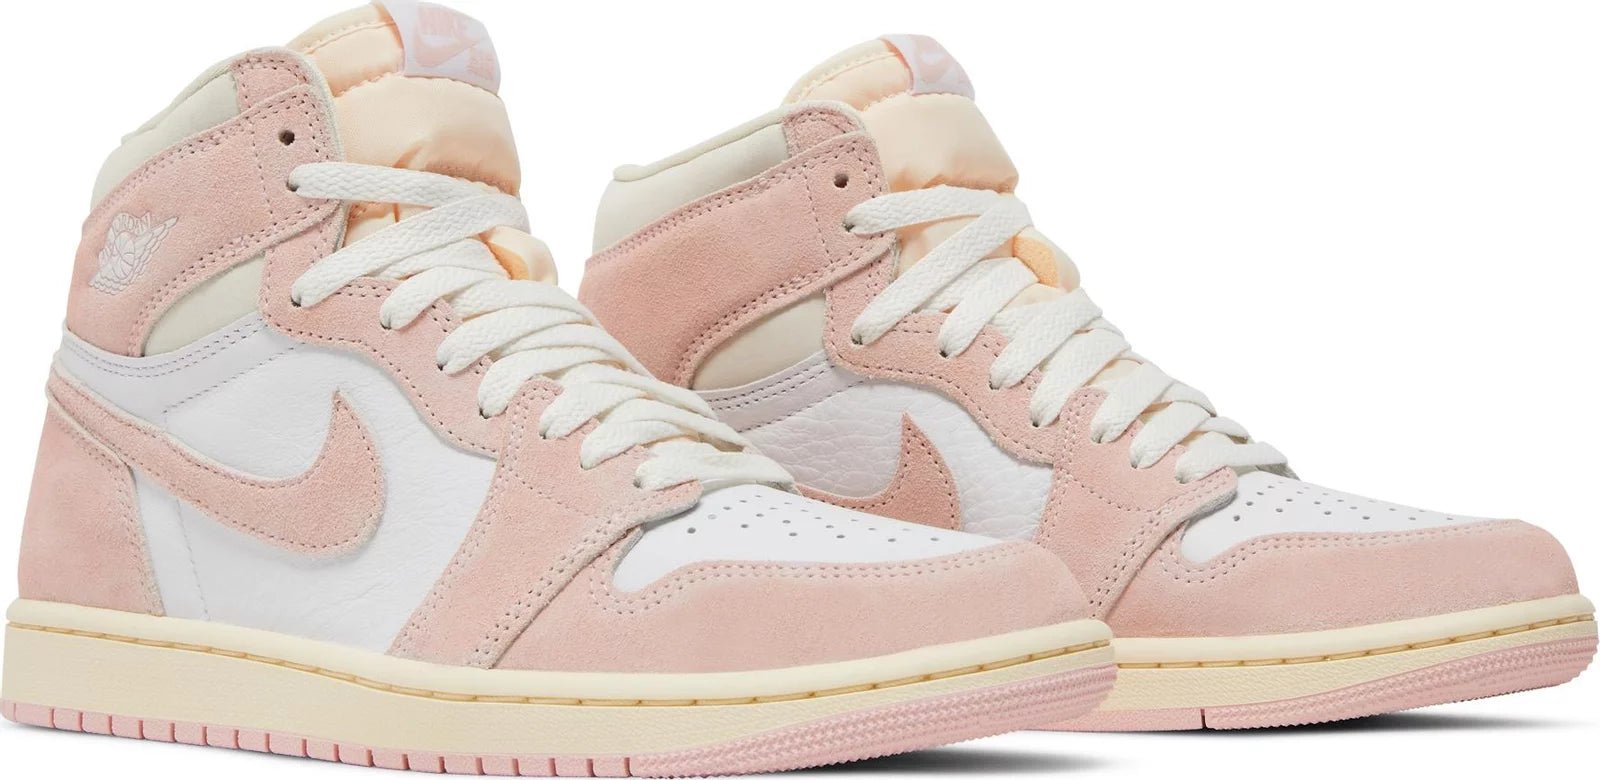 Air Spike jordan 1 Retro High OG Washed Pink (W) - Paroissesaintefoy Sneakers Sale Online